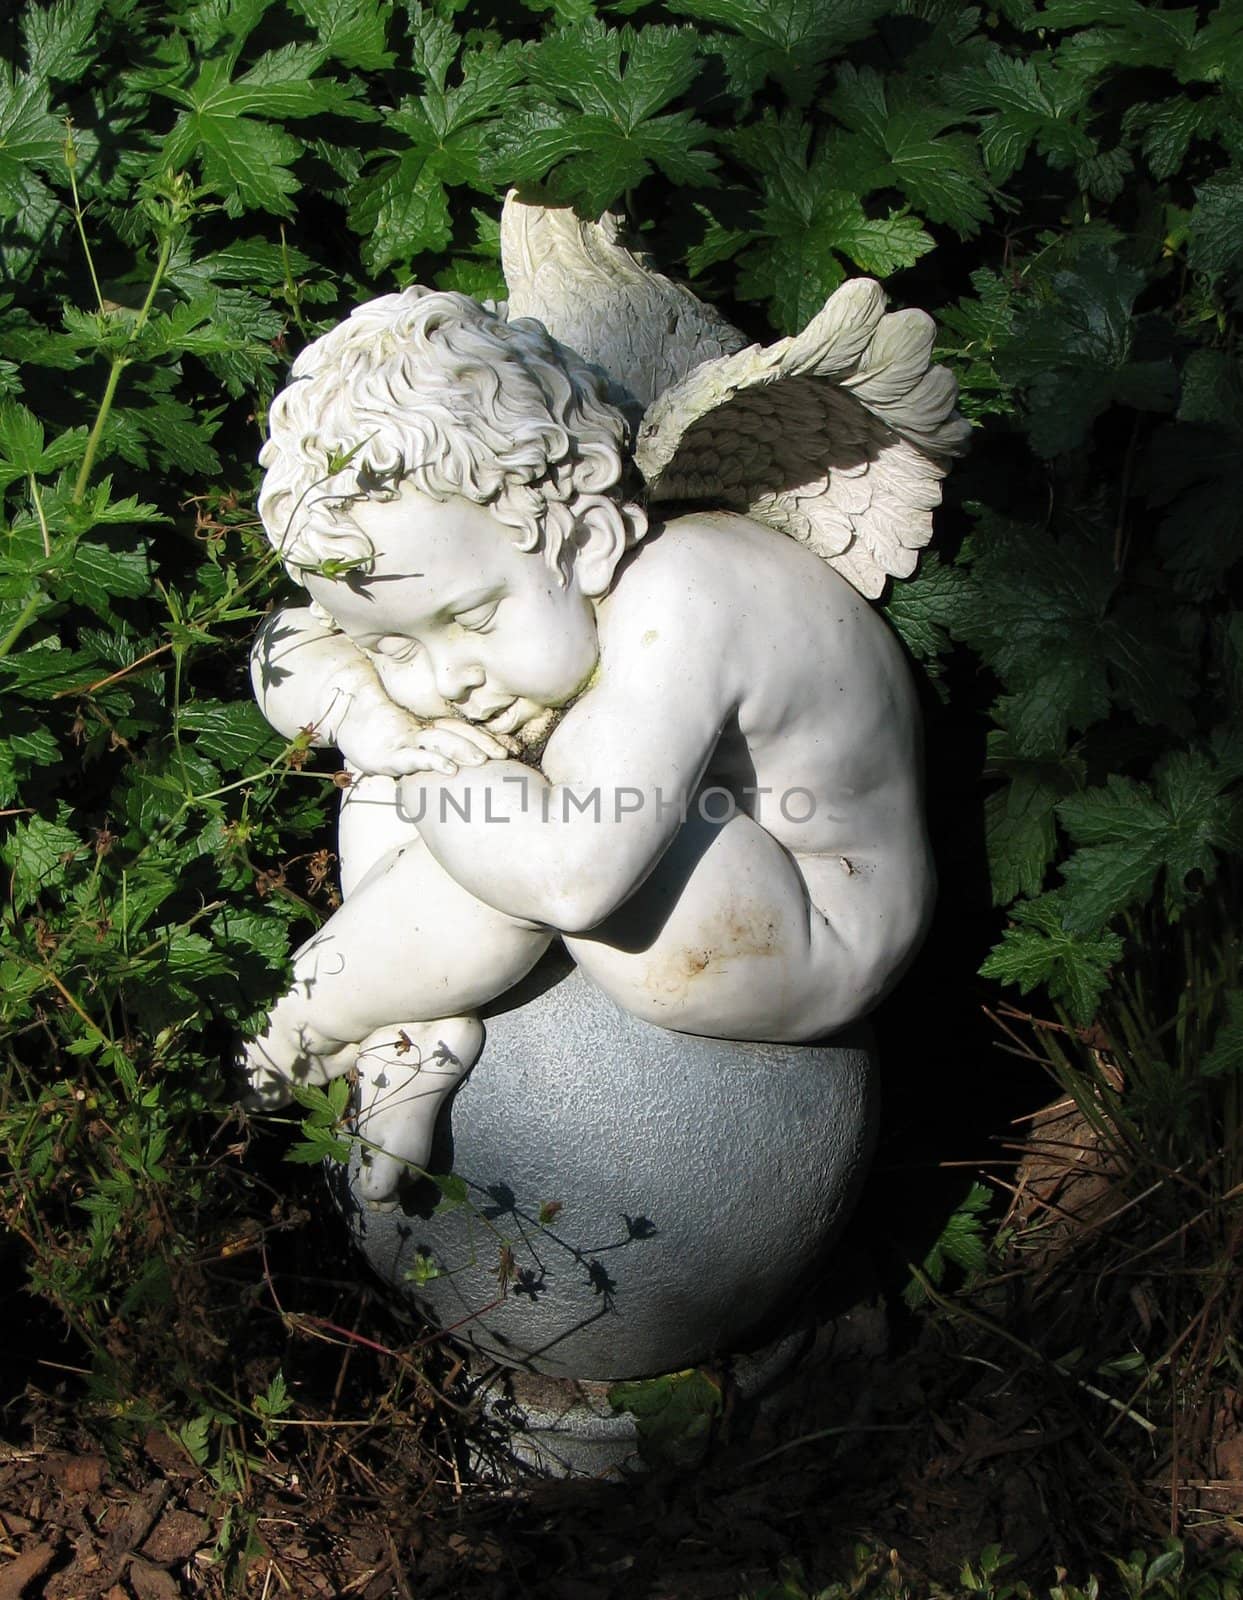 sleeping little stone angel in the garden